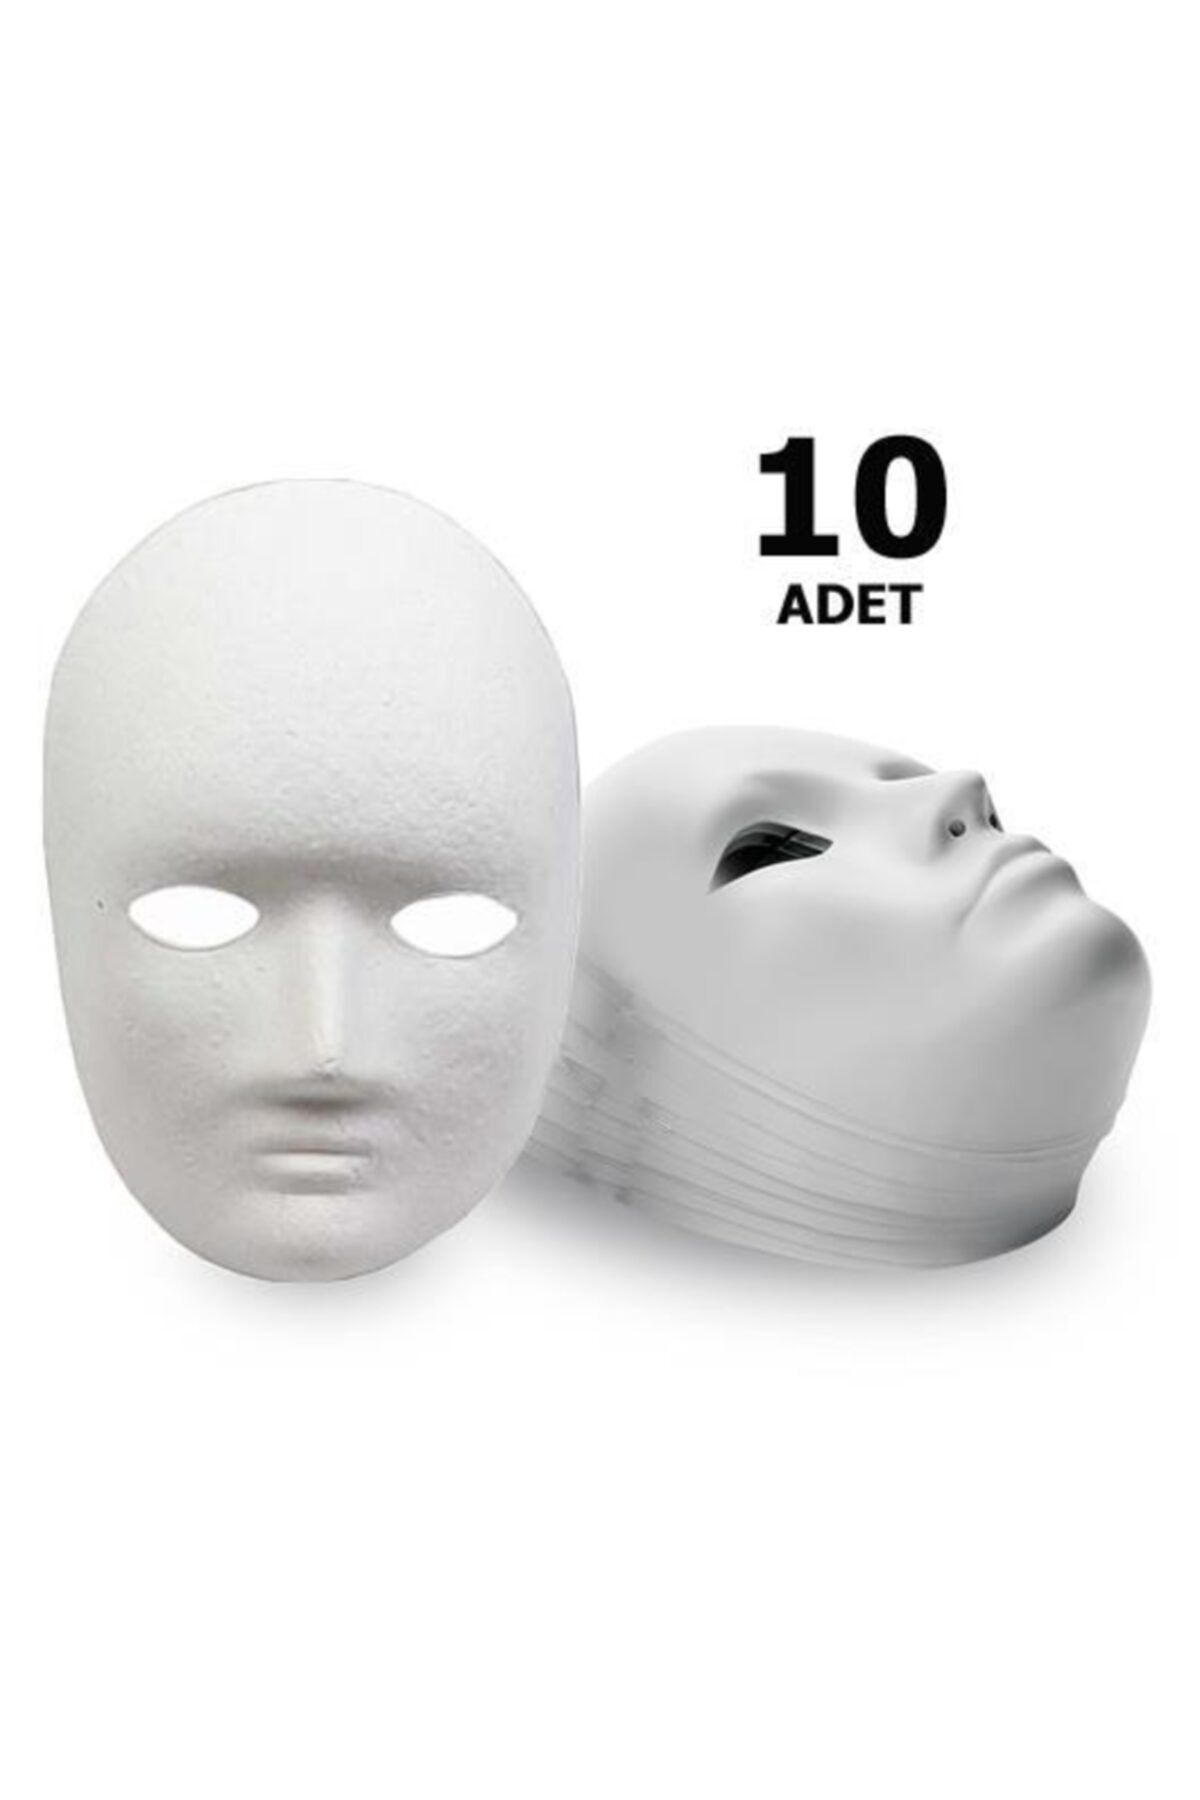 Hobialem 10 Adet, Karton Maske, Boyanabilir Eğitici Maske Boyama, Etkinlik Ve Hobi Maskesi